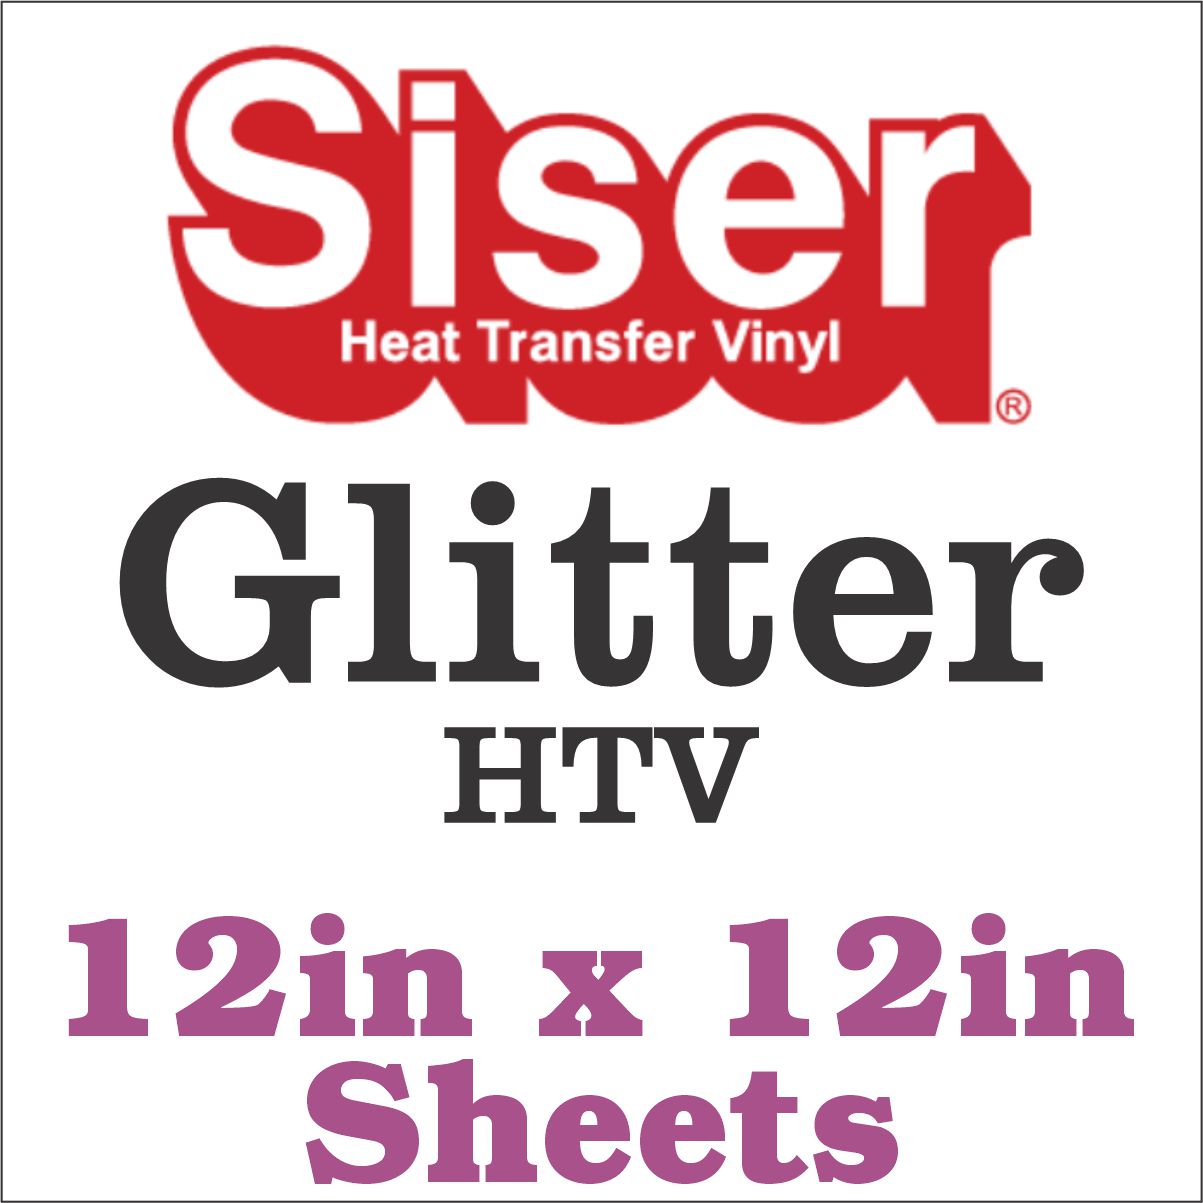 Siser Glitter HTV 20 x 12 Sheet - Iron on Heat Transfer Vinyl (Black  Silver)